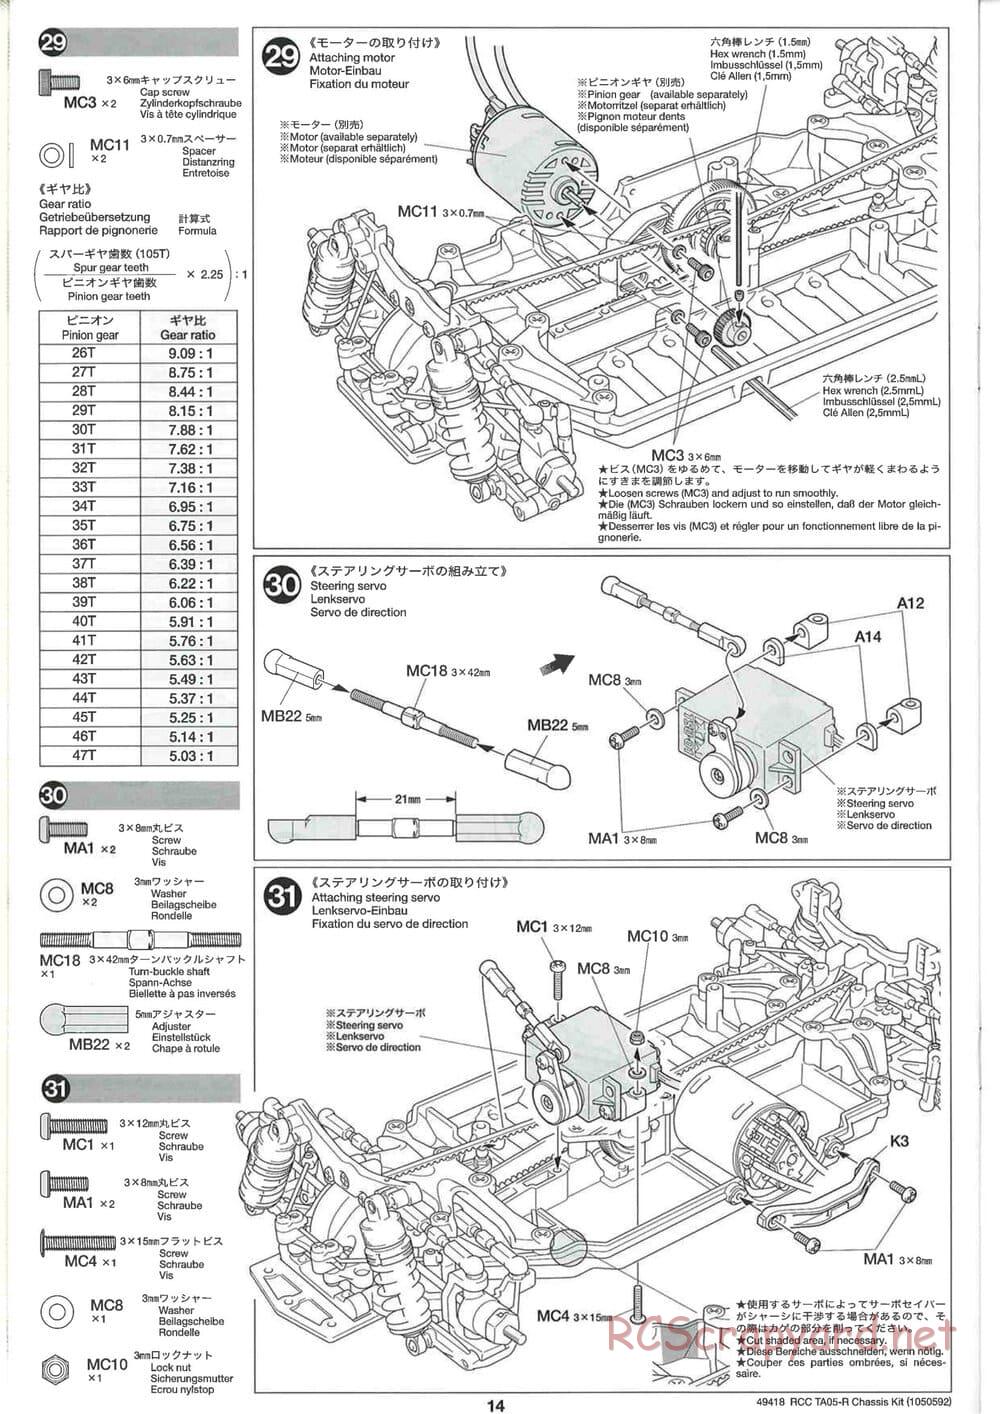 Tamiya - TA05-R Chassis - Manual - Page 14